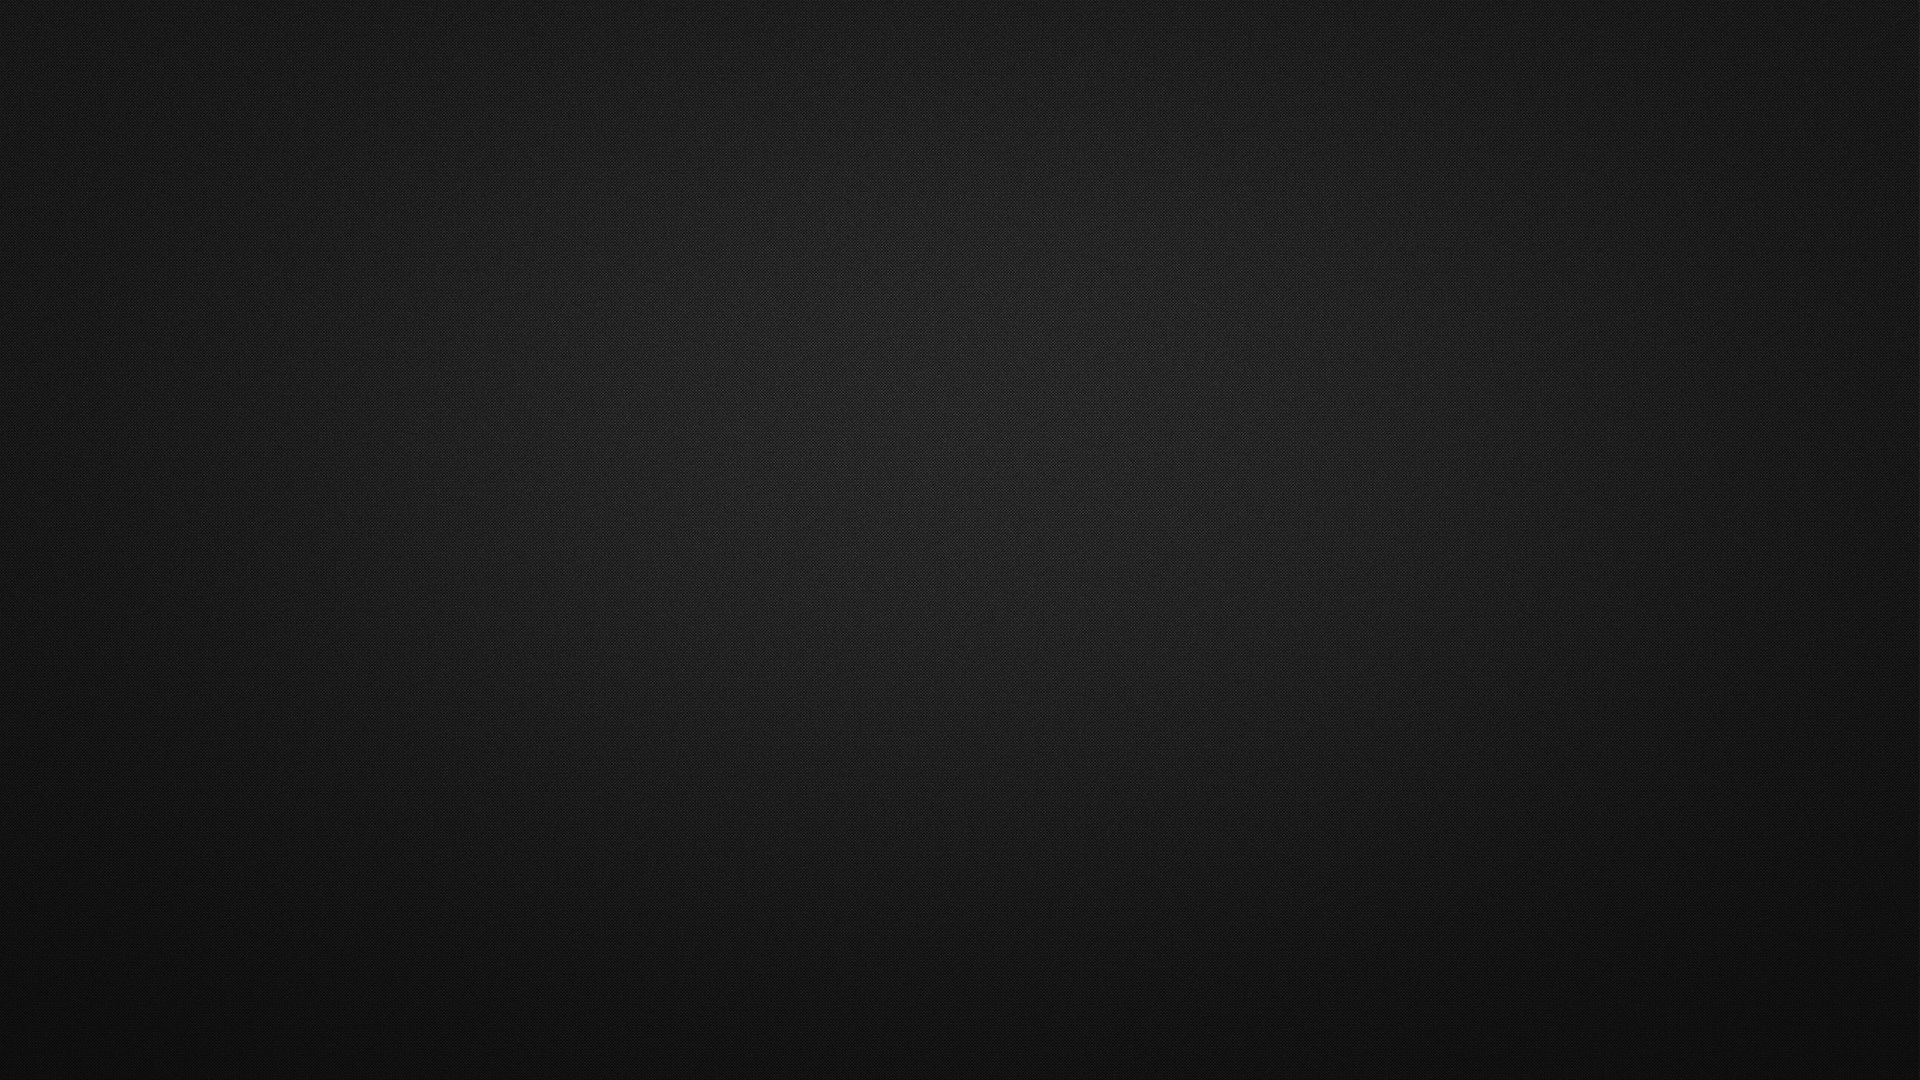 45 1080p Black Wallpaper On Wallpapersafari